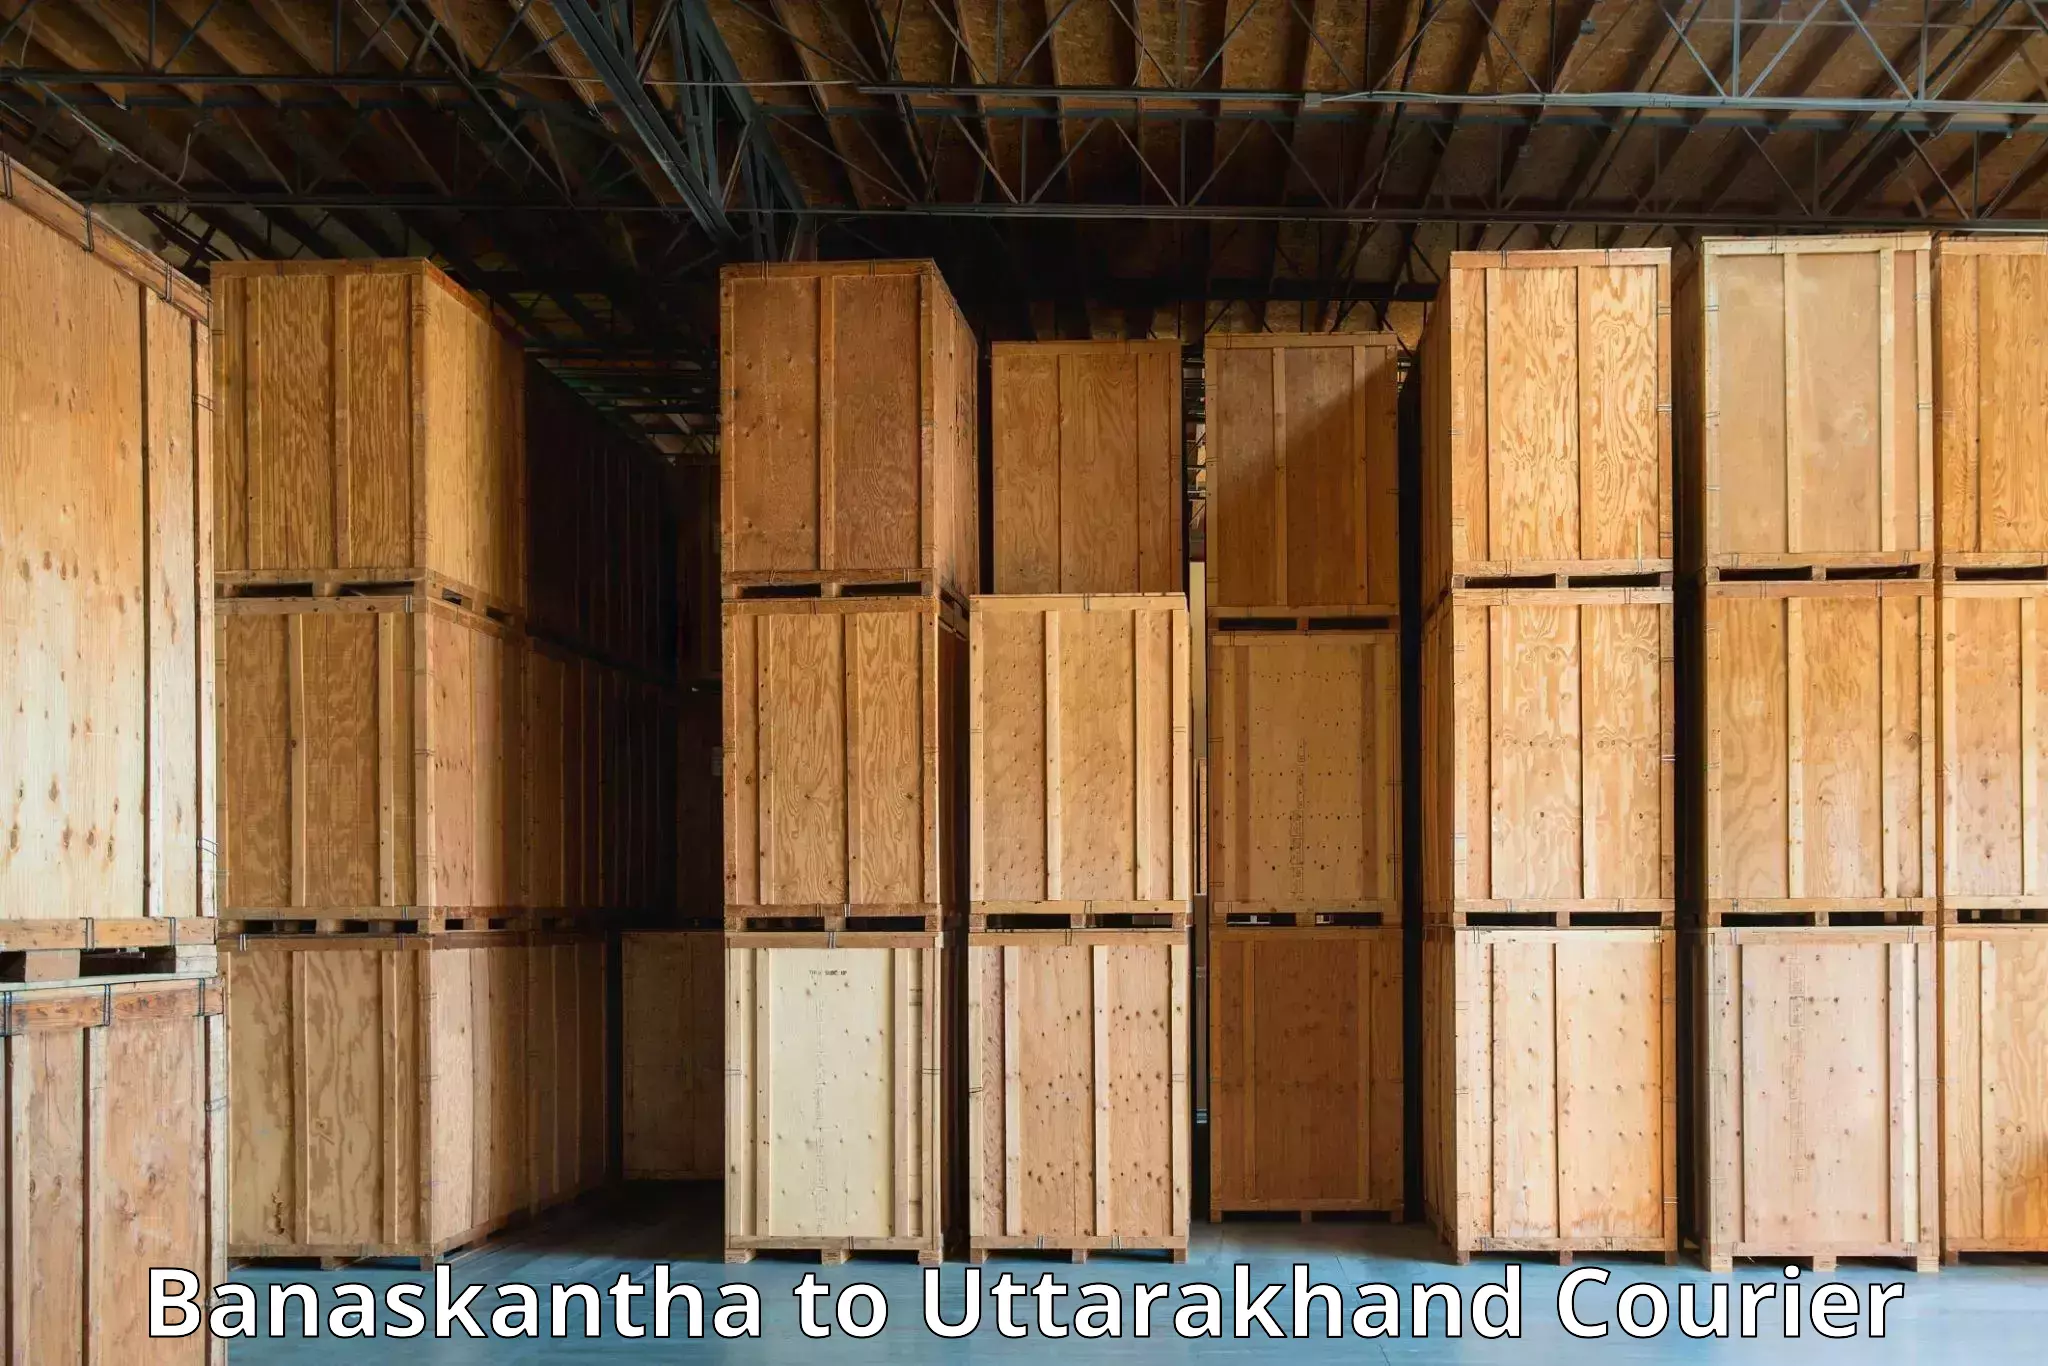 Efficient freight service Banaskantha to Tehri Garhwal